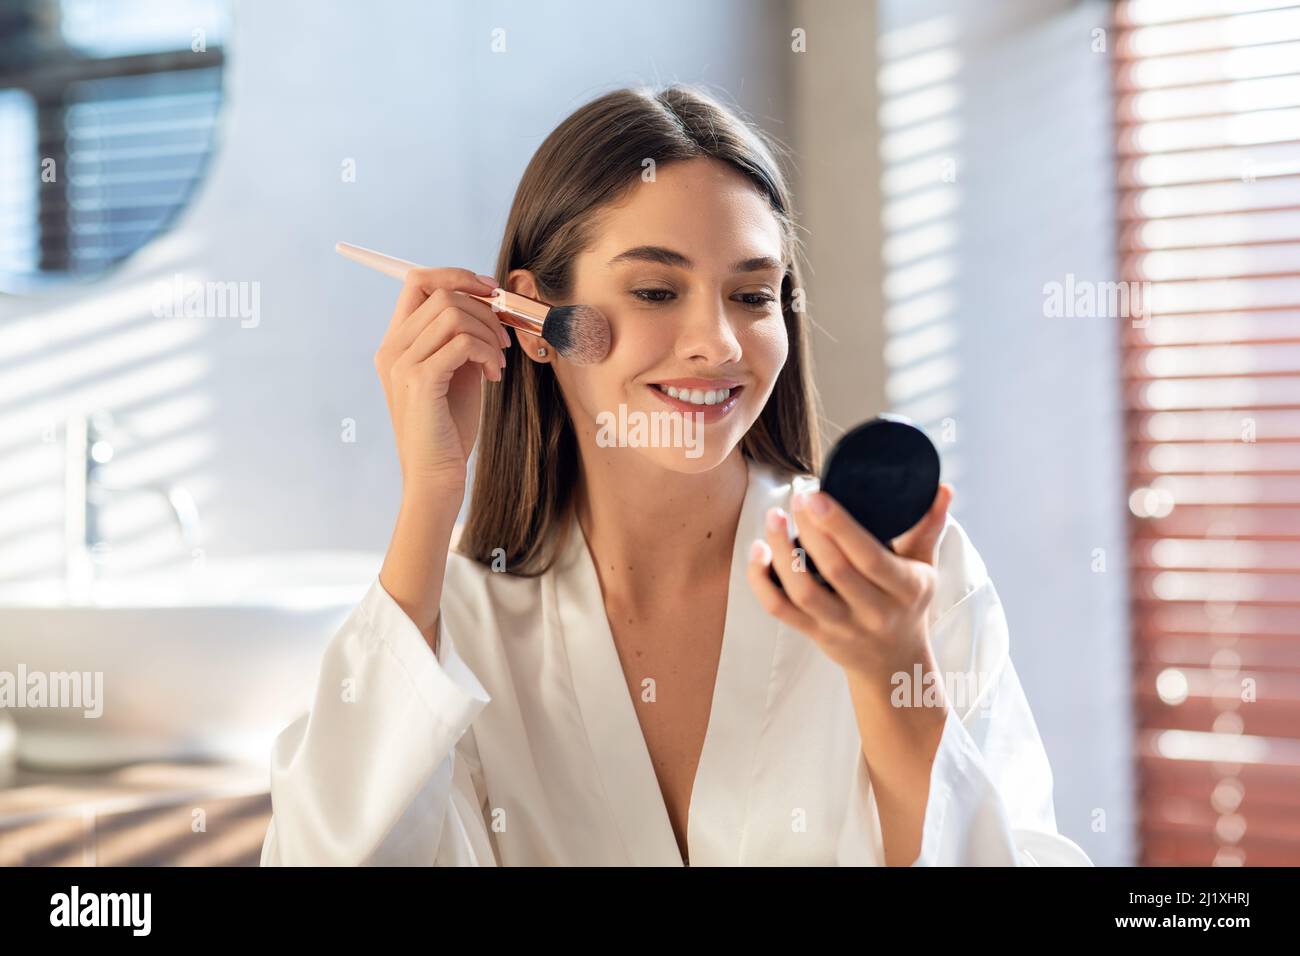 Maquillaje diario. Sonriendo joven mujer aplicando rubor con brocha de maquillaje en el baño Foto de stock